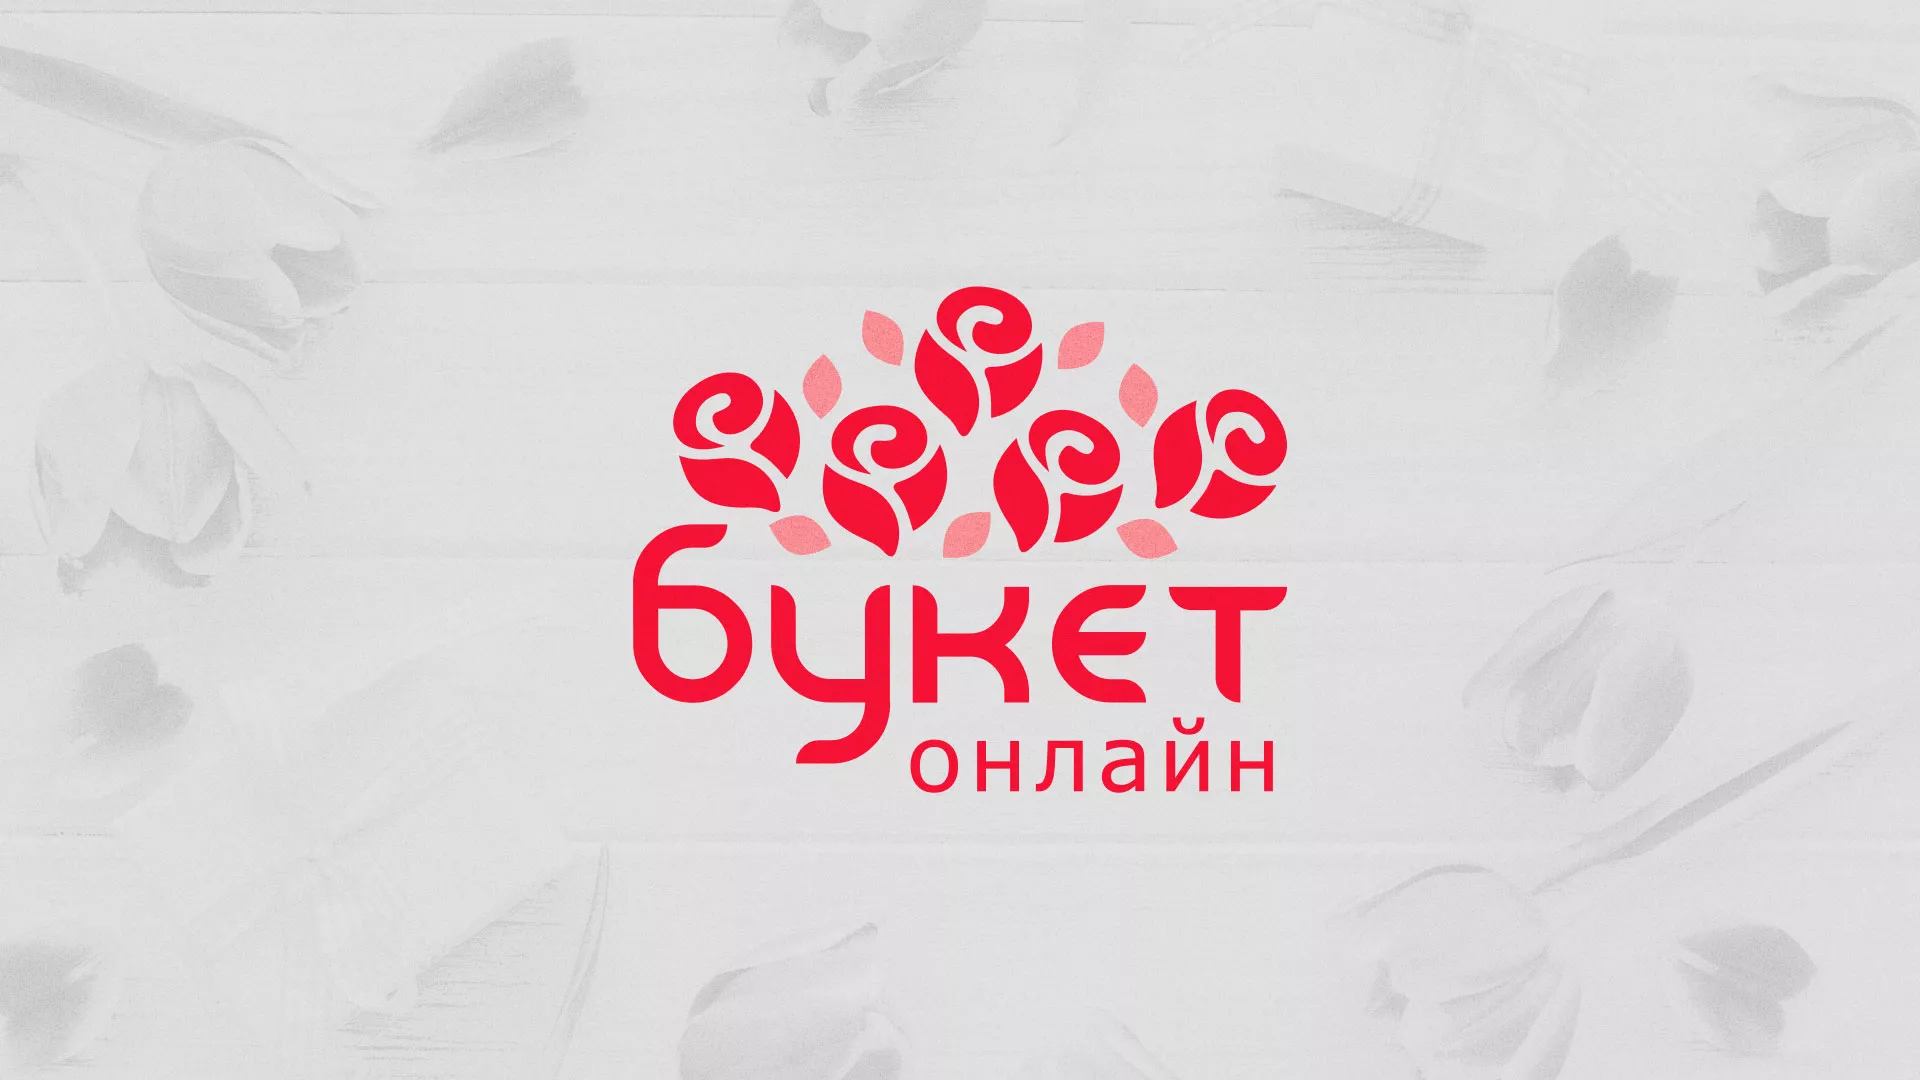 Создание интернет-магазина «Букет-онлайн» по цветам в Черепаново